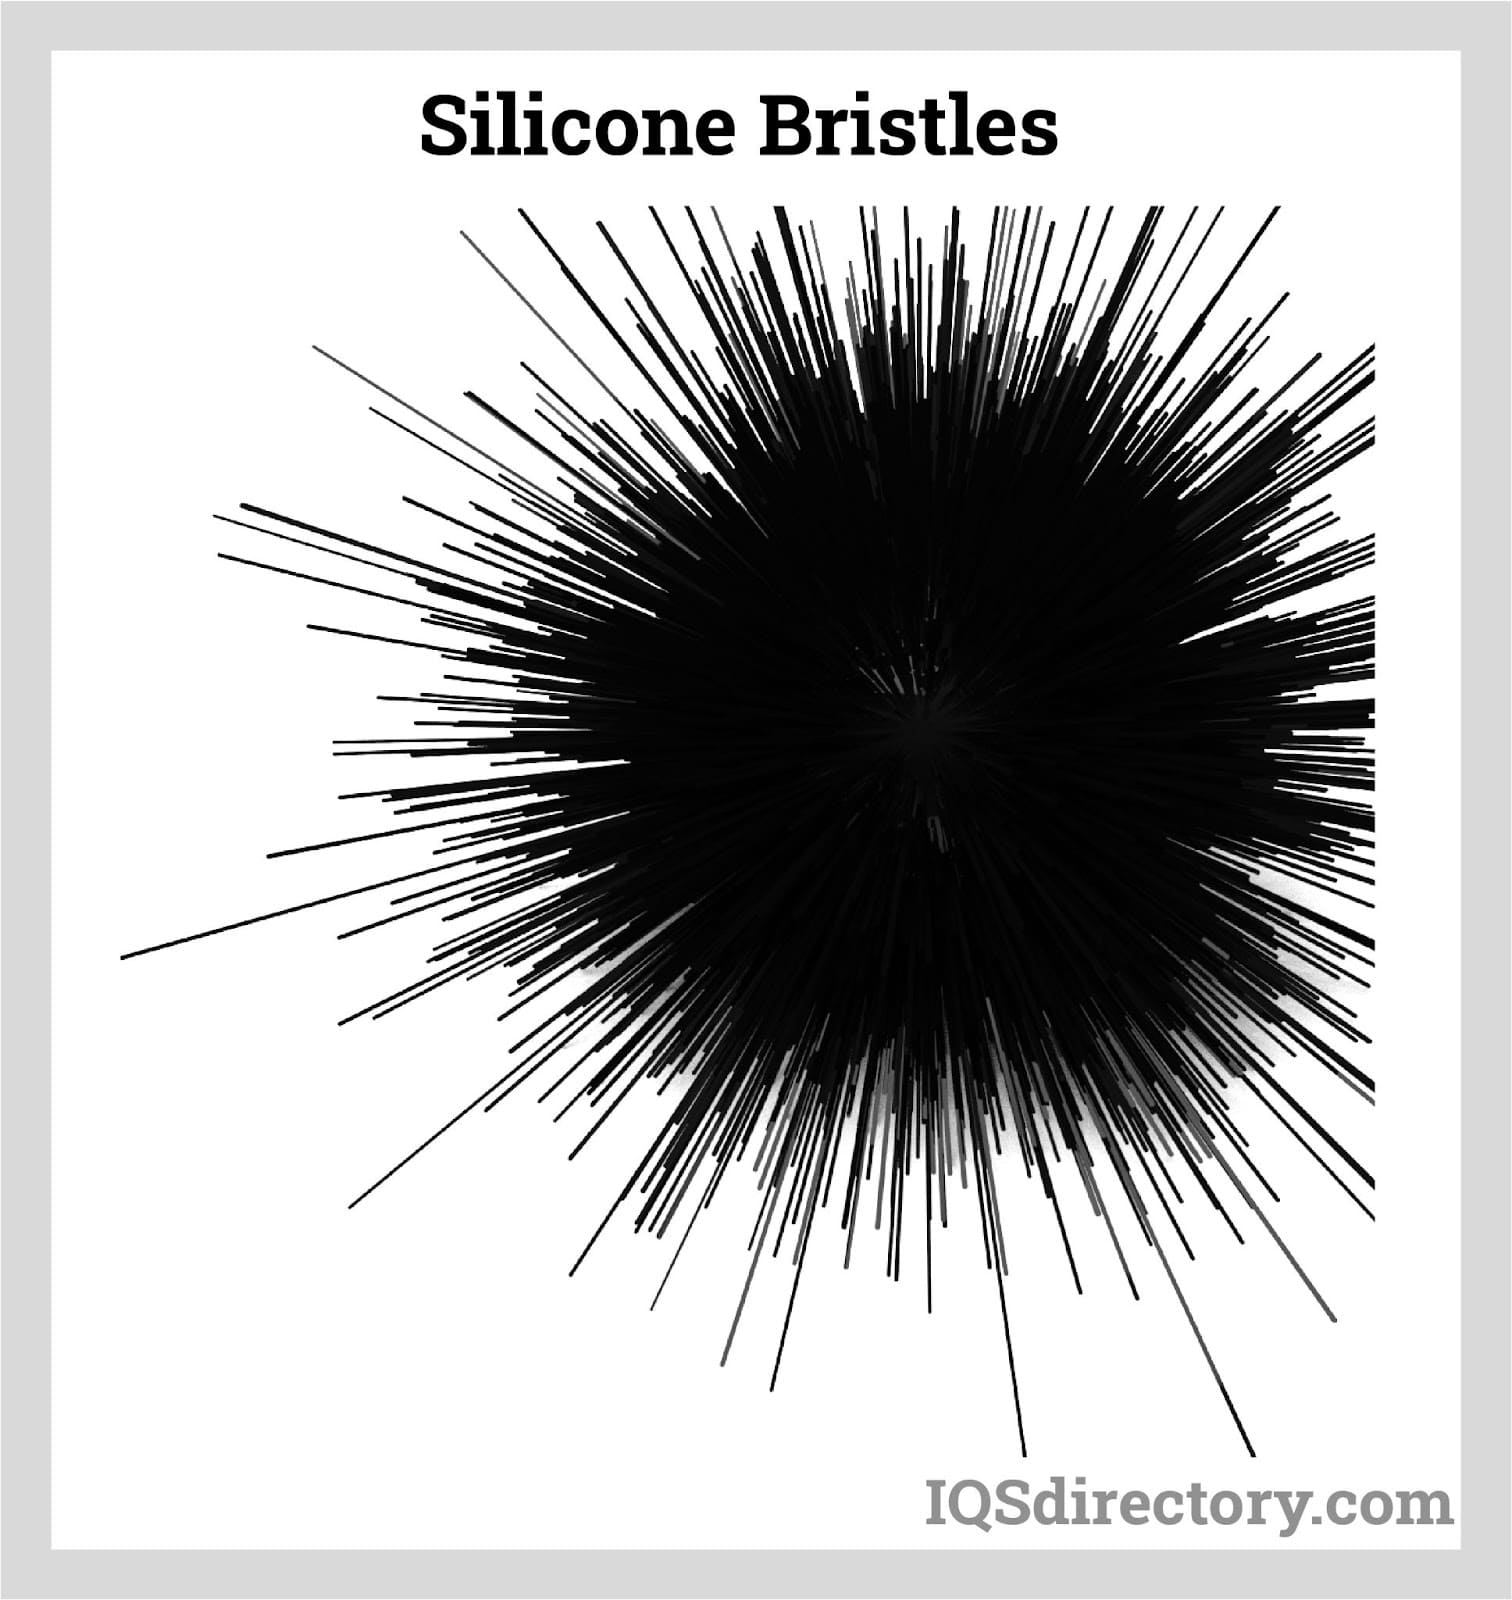 Silicone Bristles